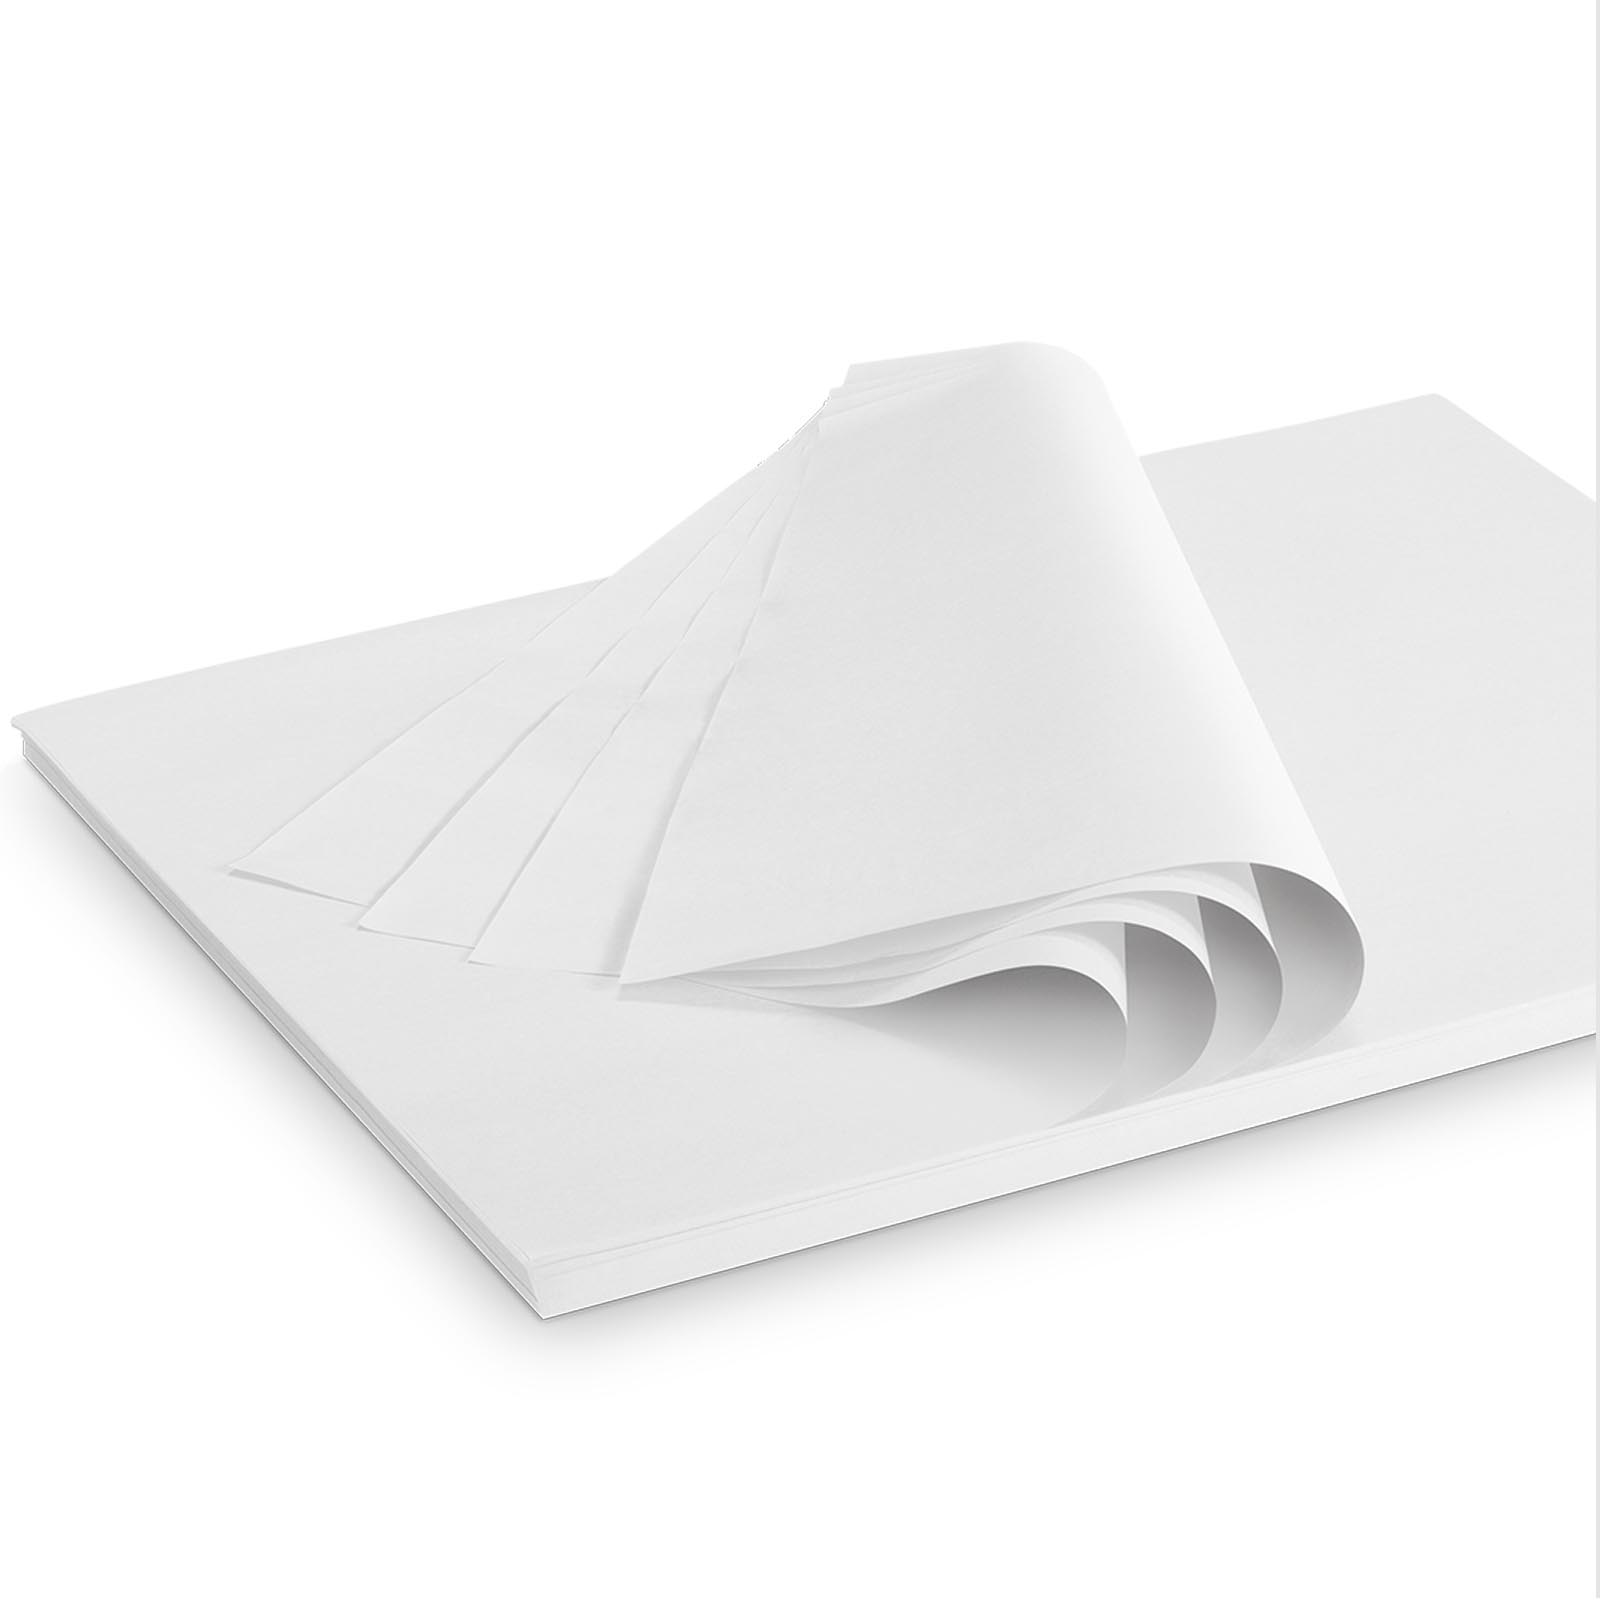 Seidenpapier 50x75cm säurefrei weiß gebleicht 22g/qm 25kg